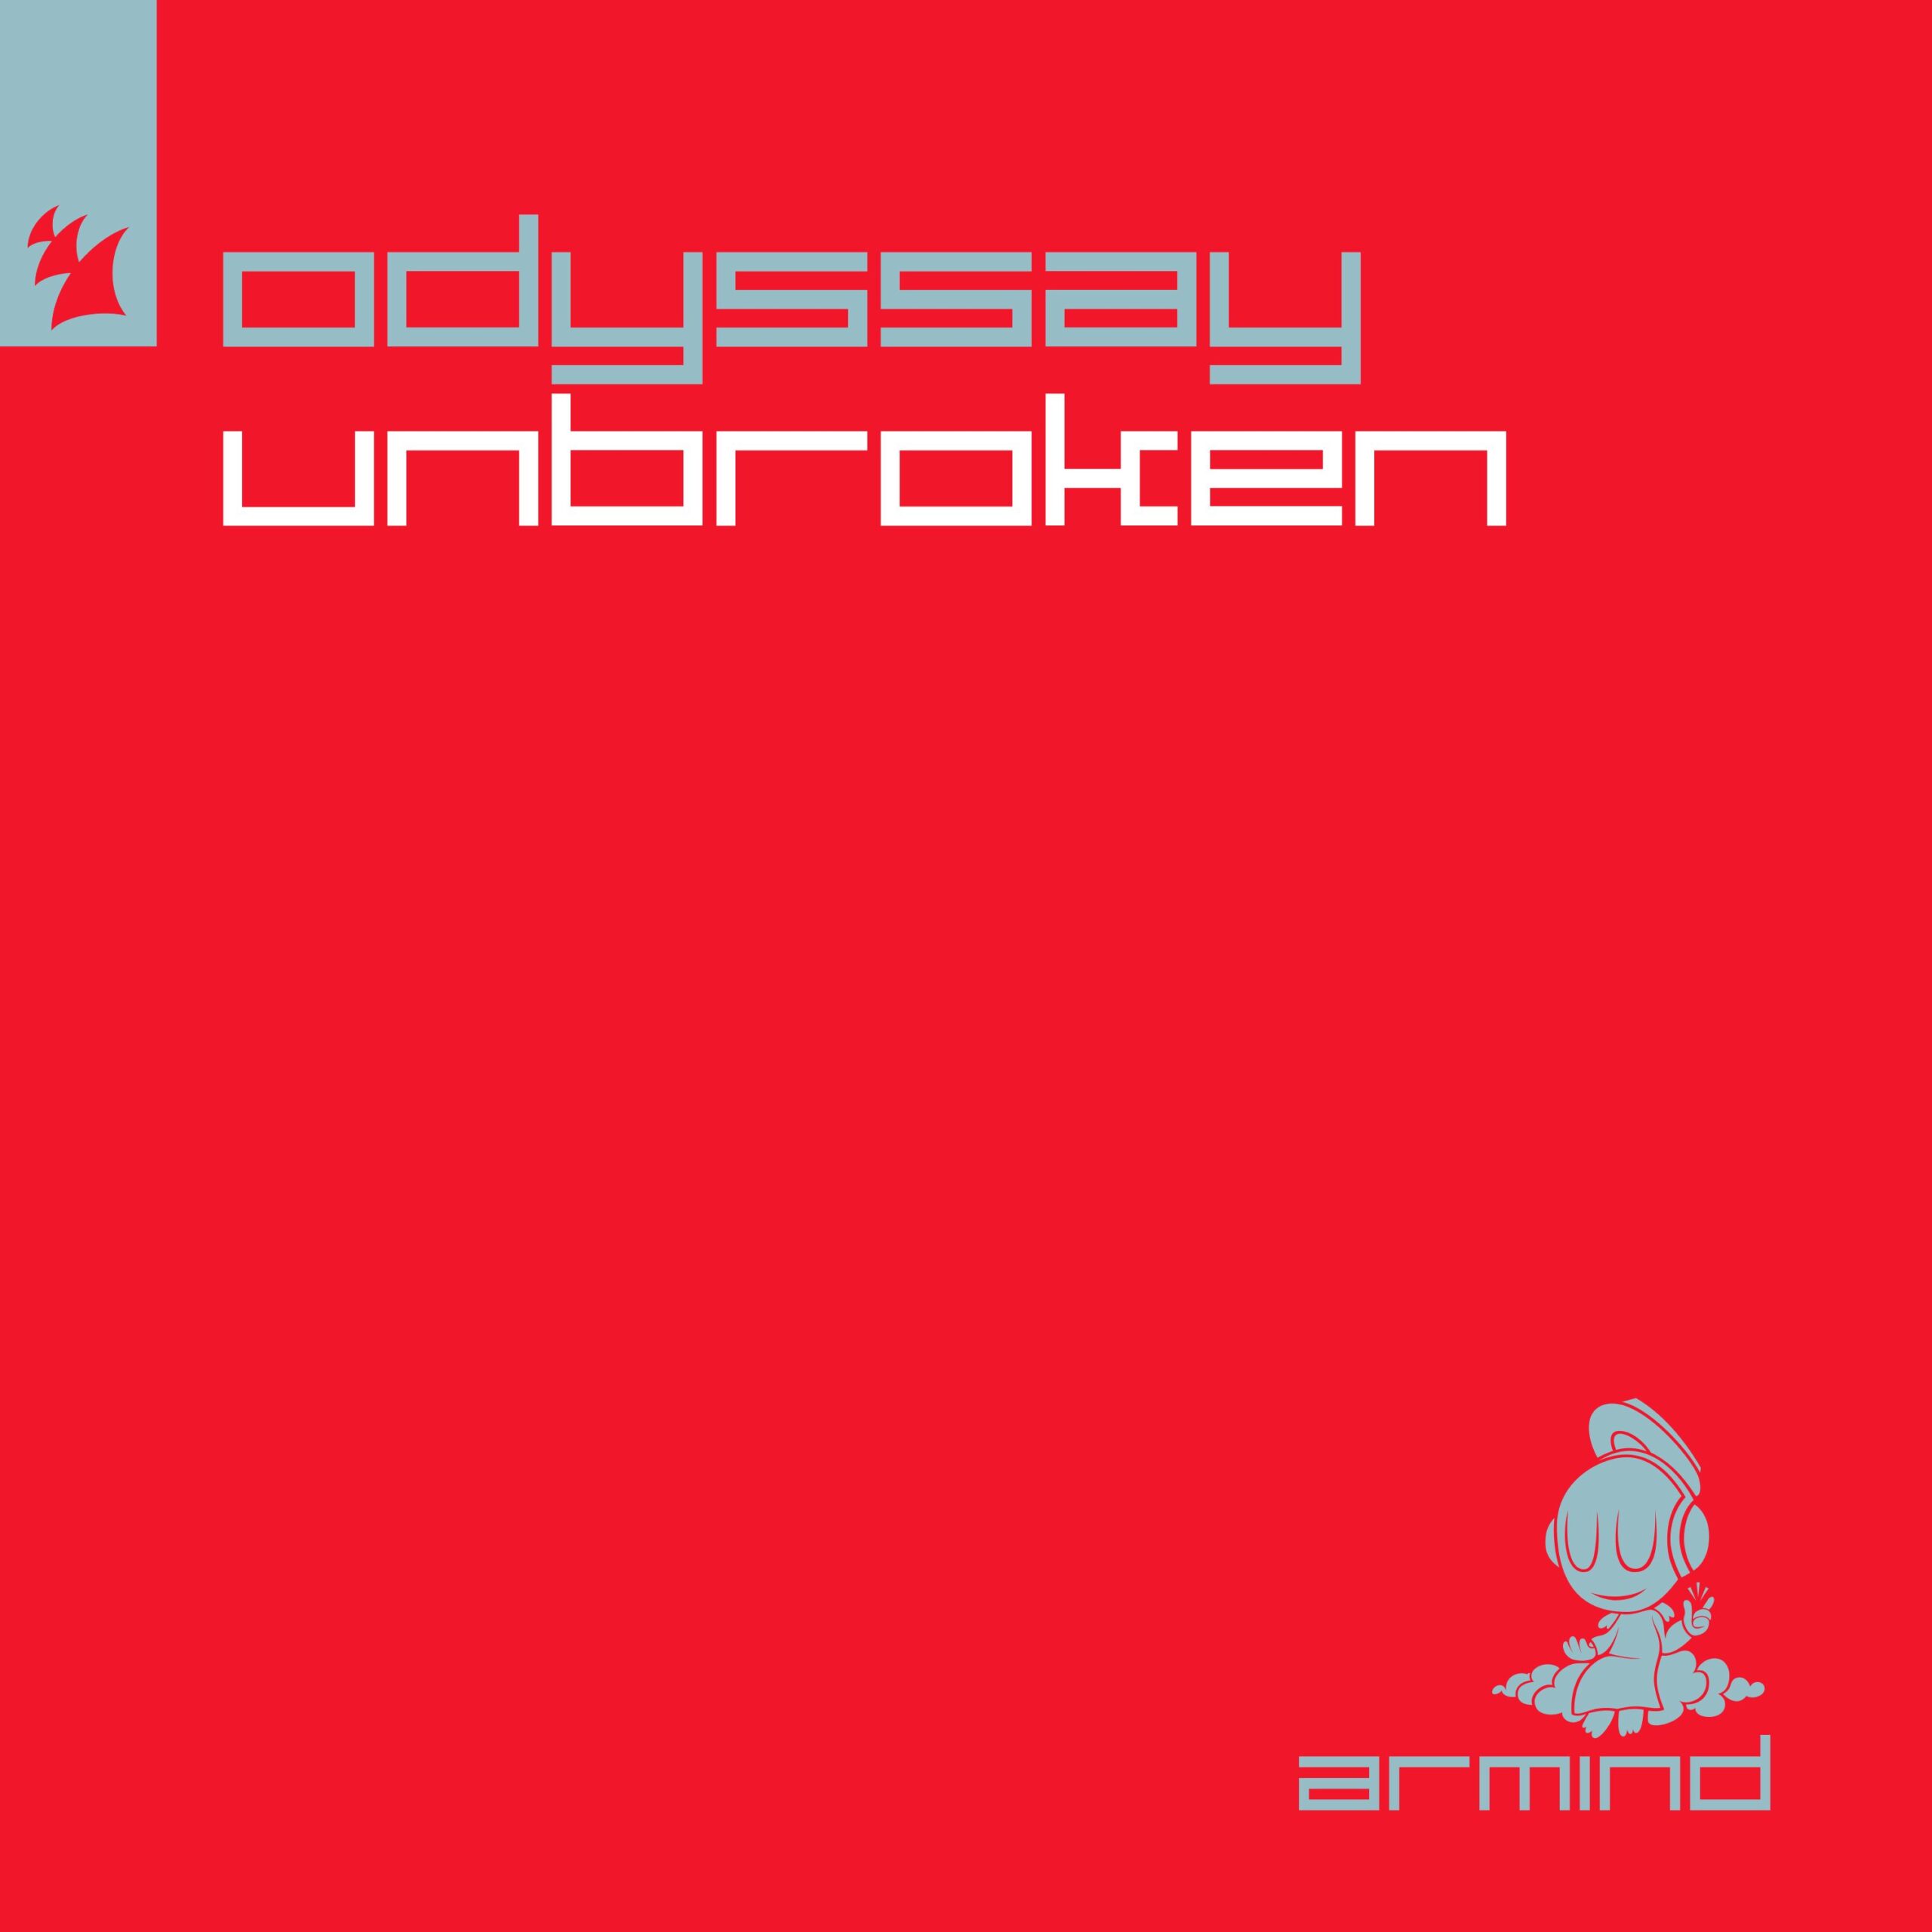 ODYSSAY presents Unbroken on Armind